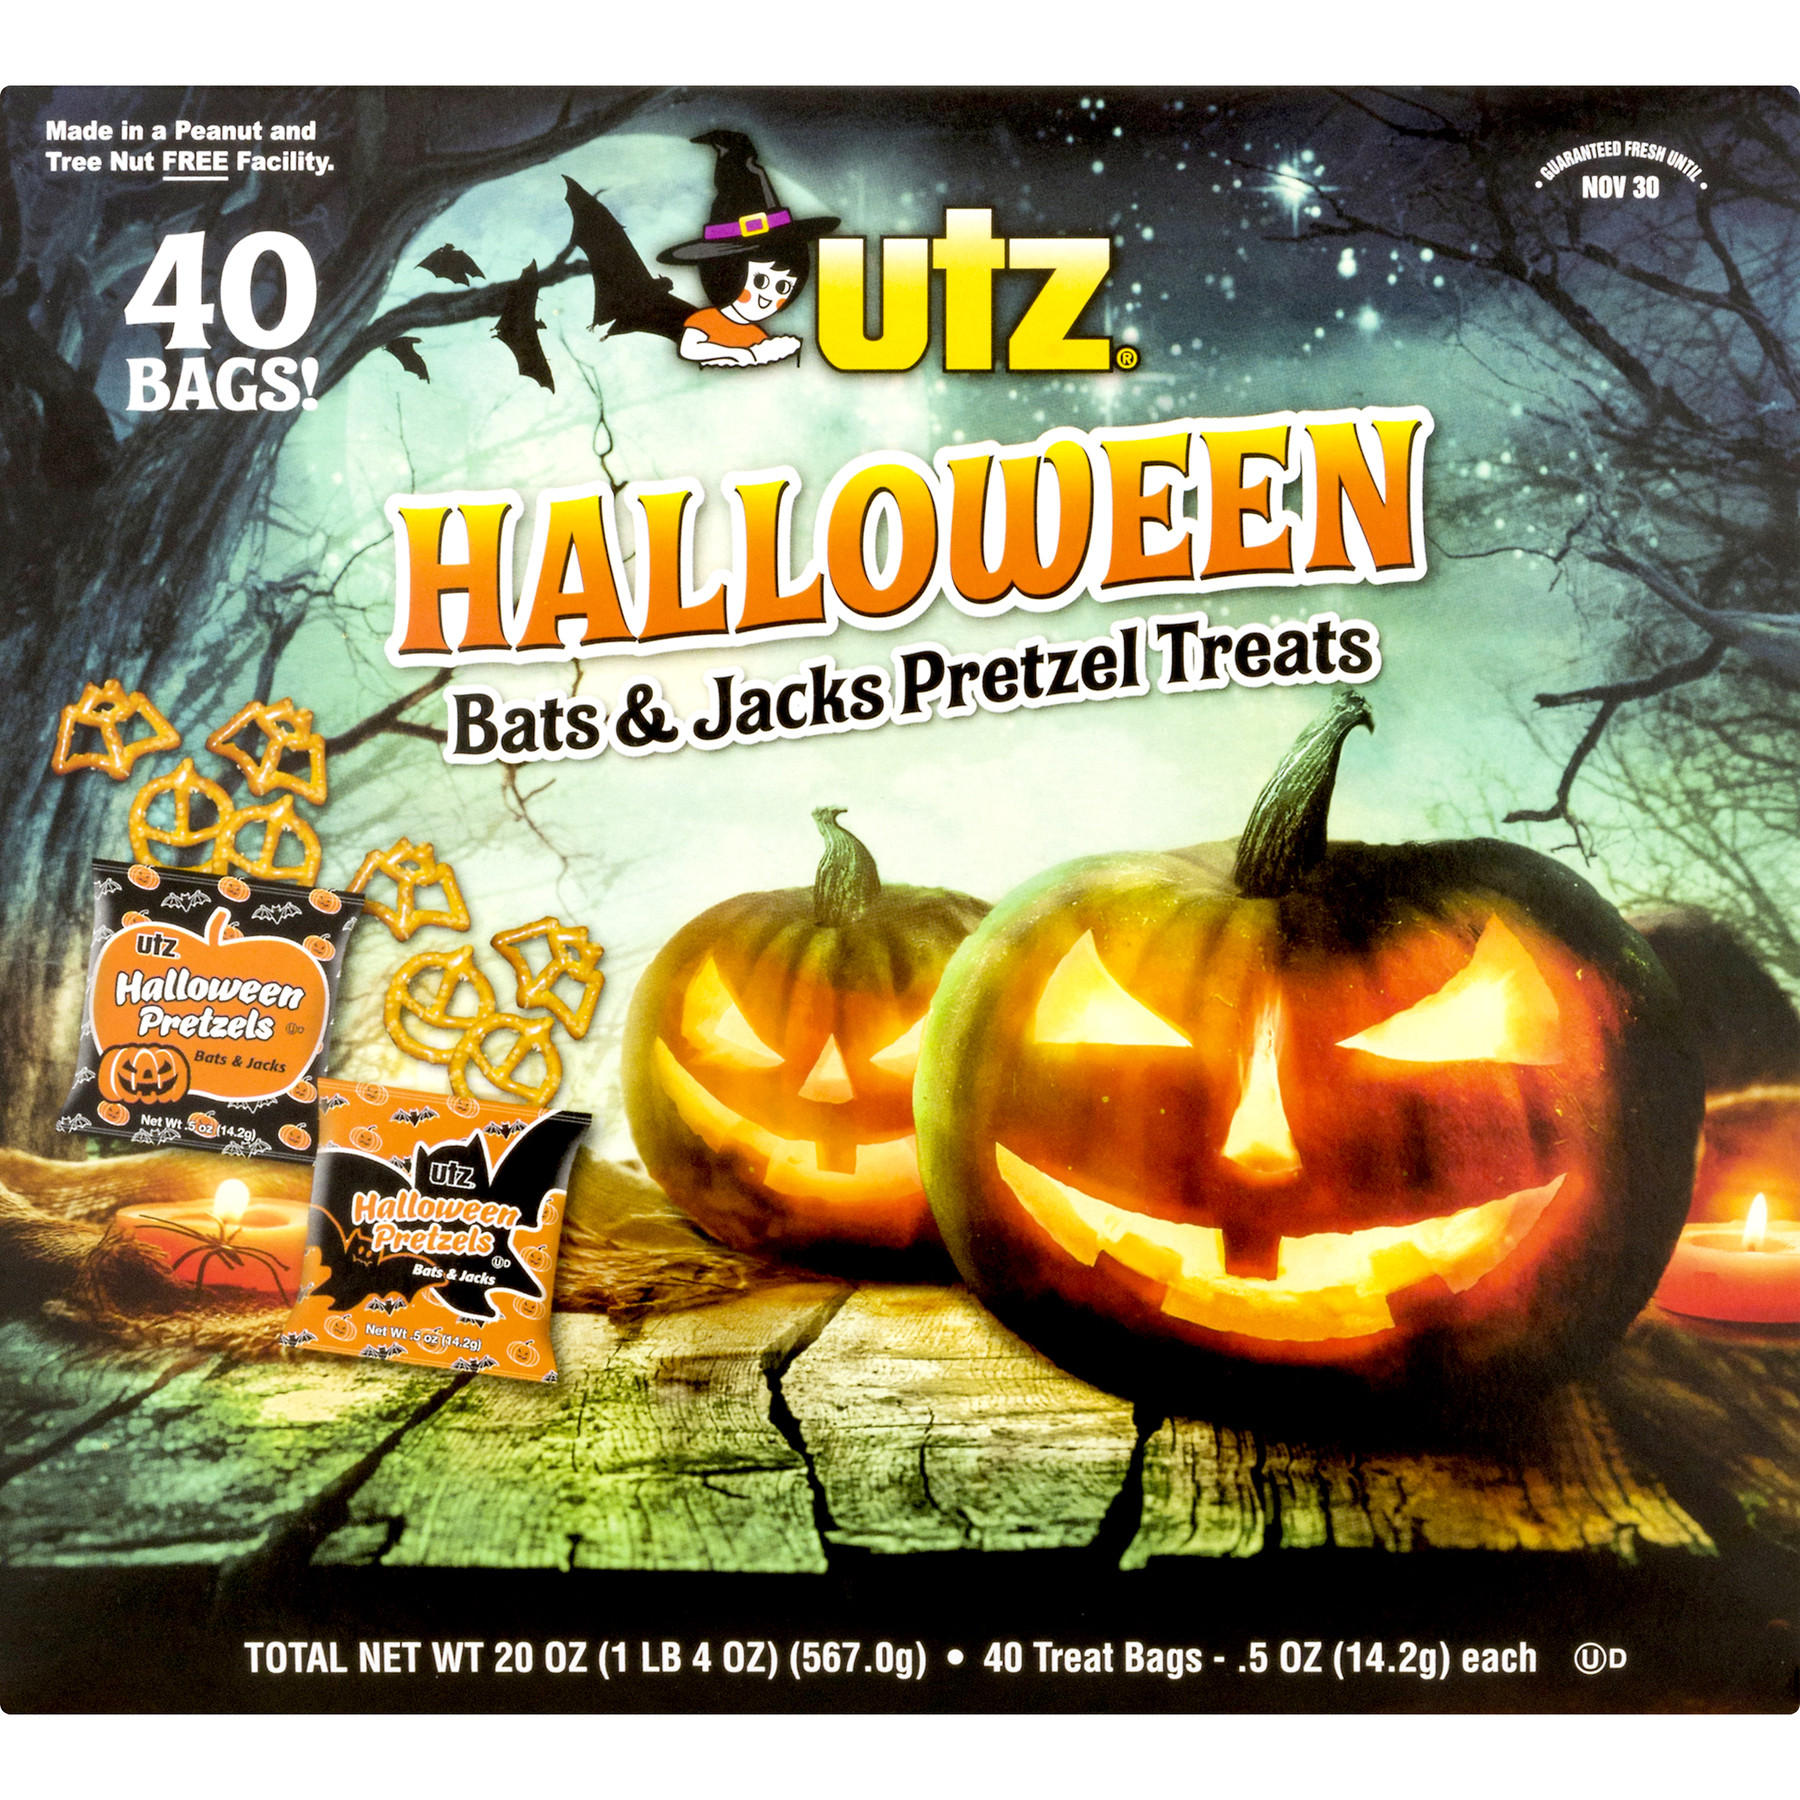 Utz Halloween Pretzels
 Utz Pretzel Treats Bats & Jacks Halloween 40 Treat Bags